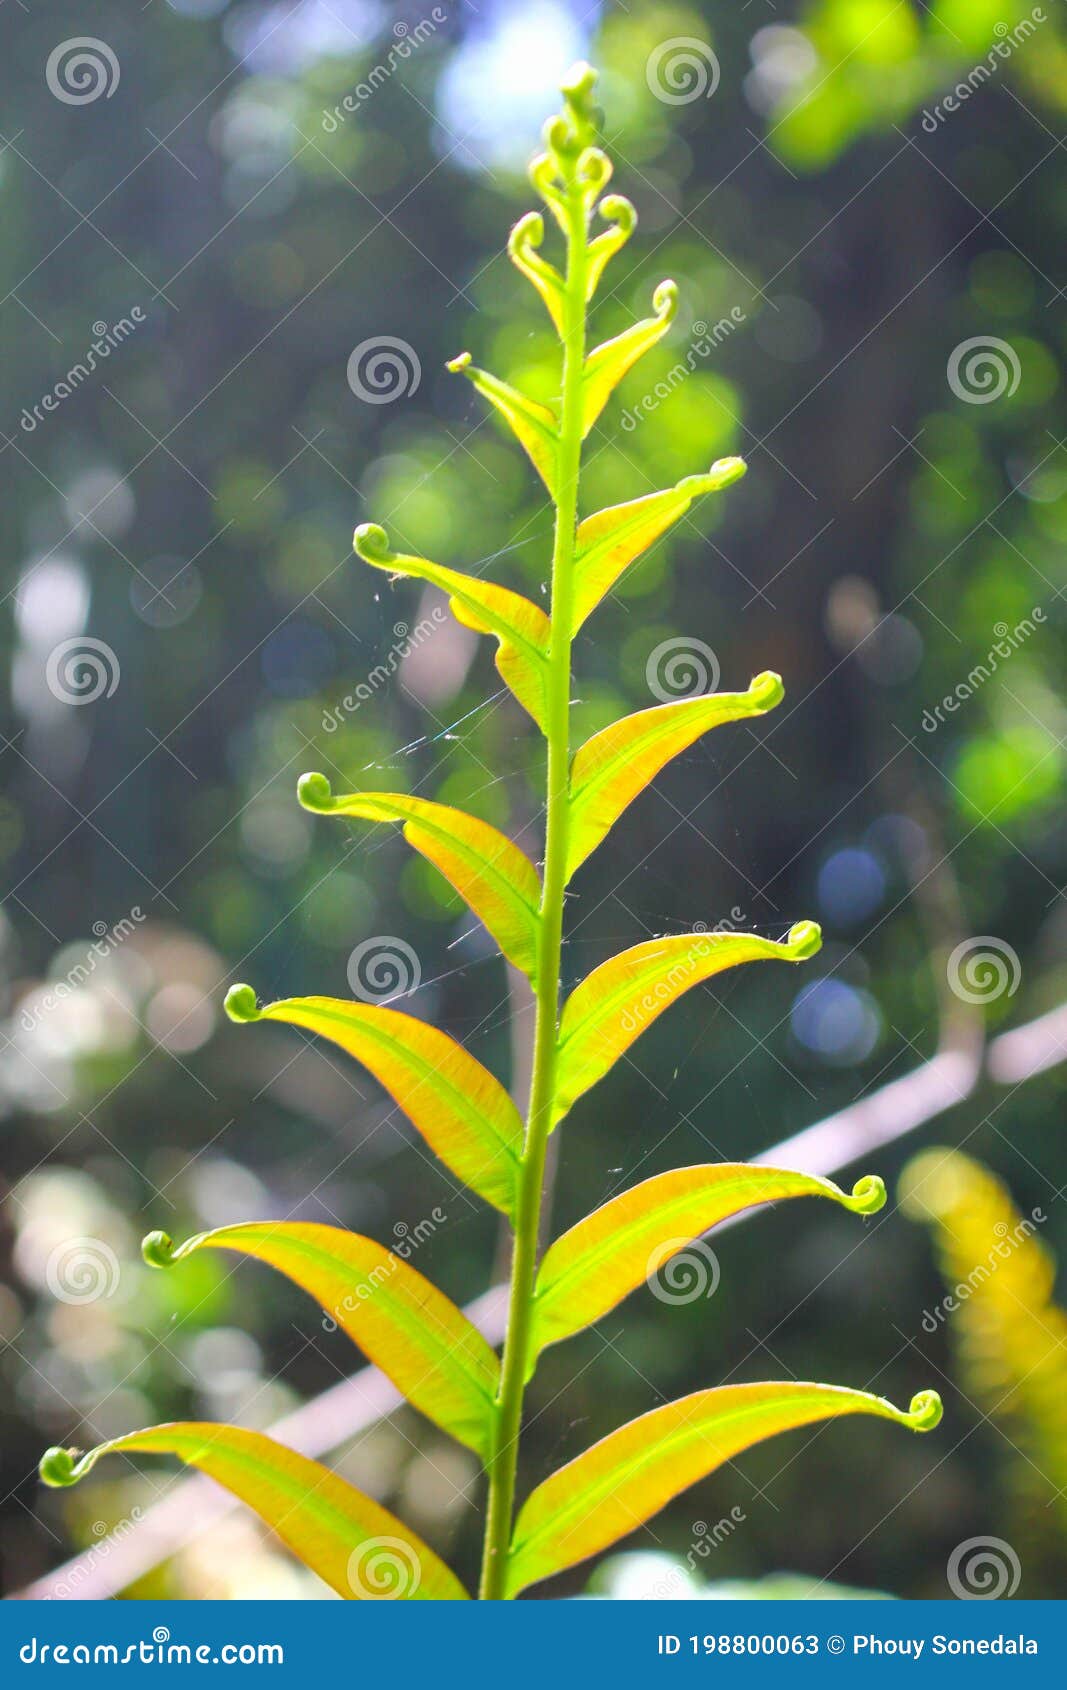 diplazium esculentum leaves athyriaceae asia nature images